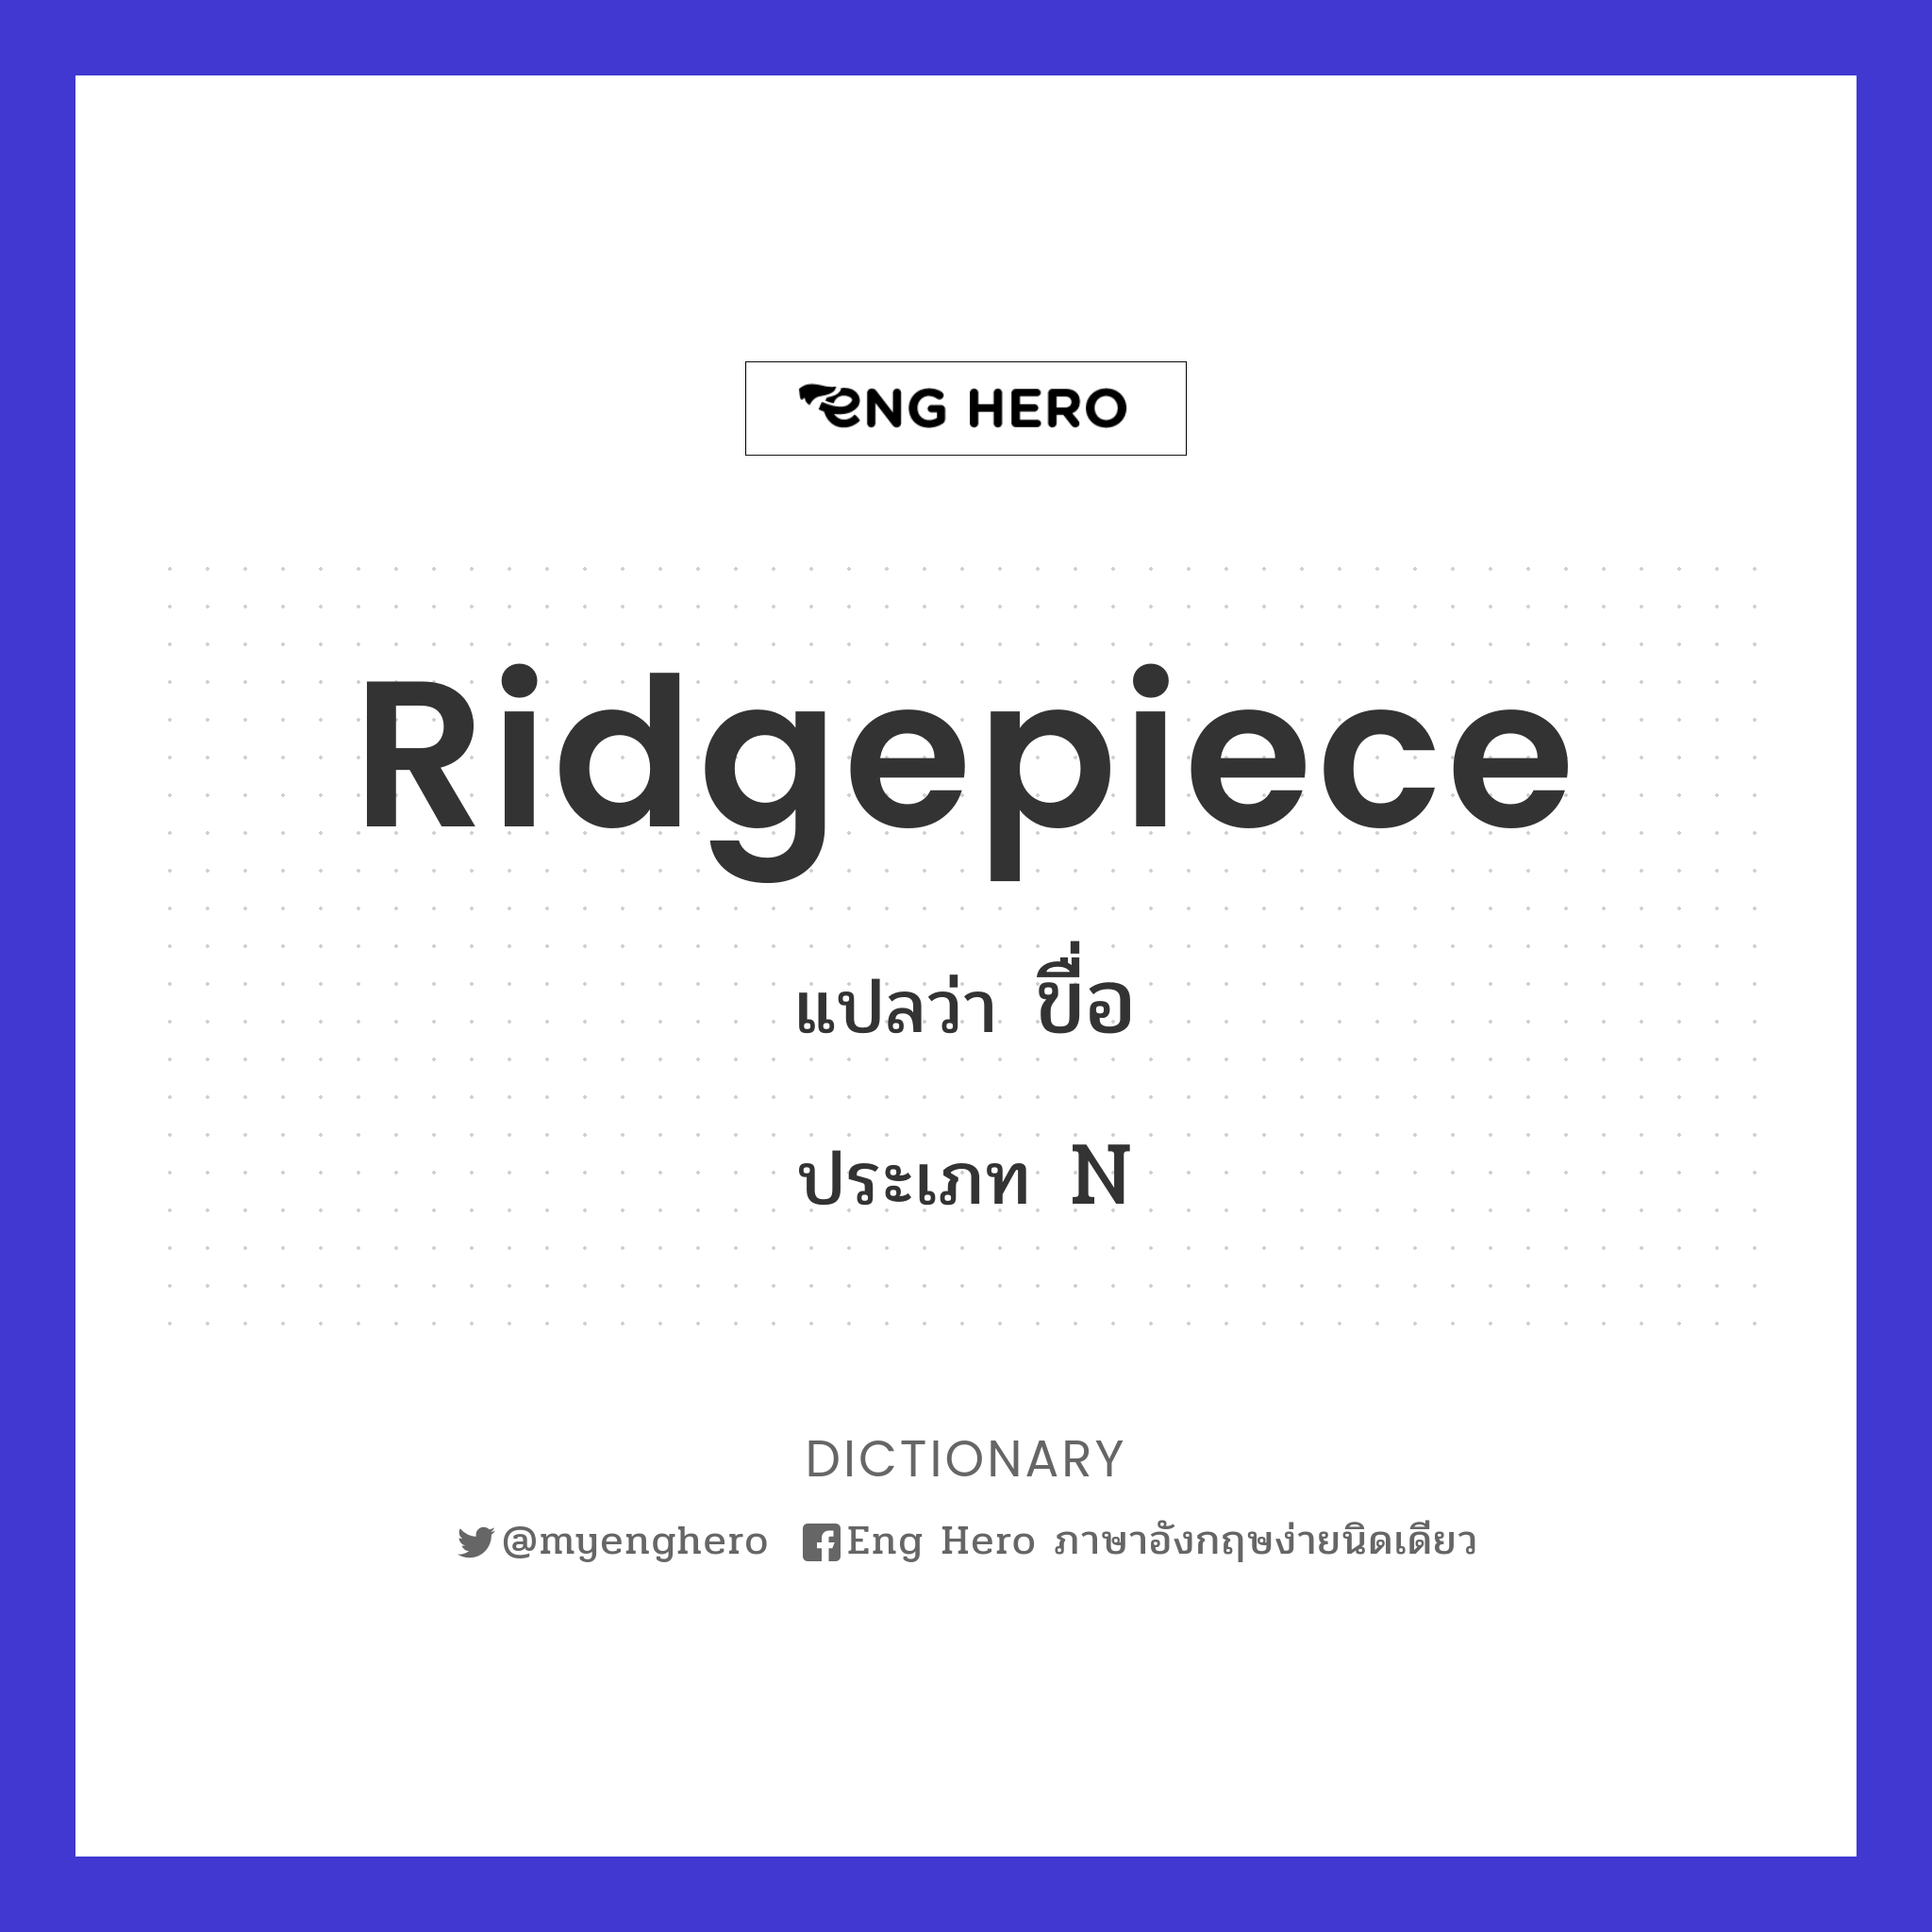 ridgepiece